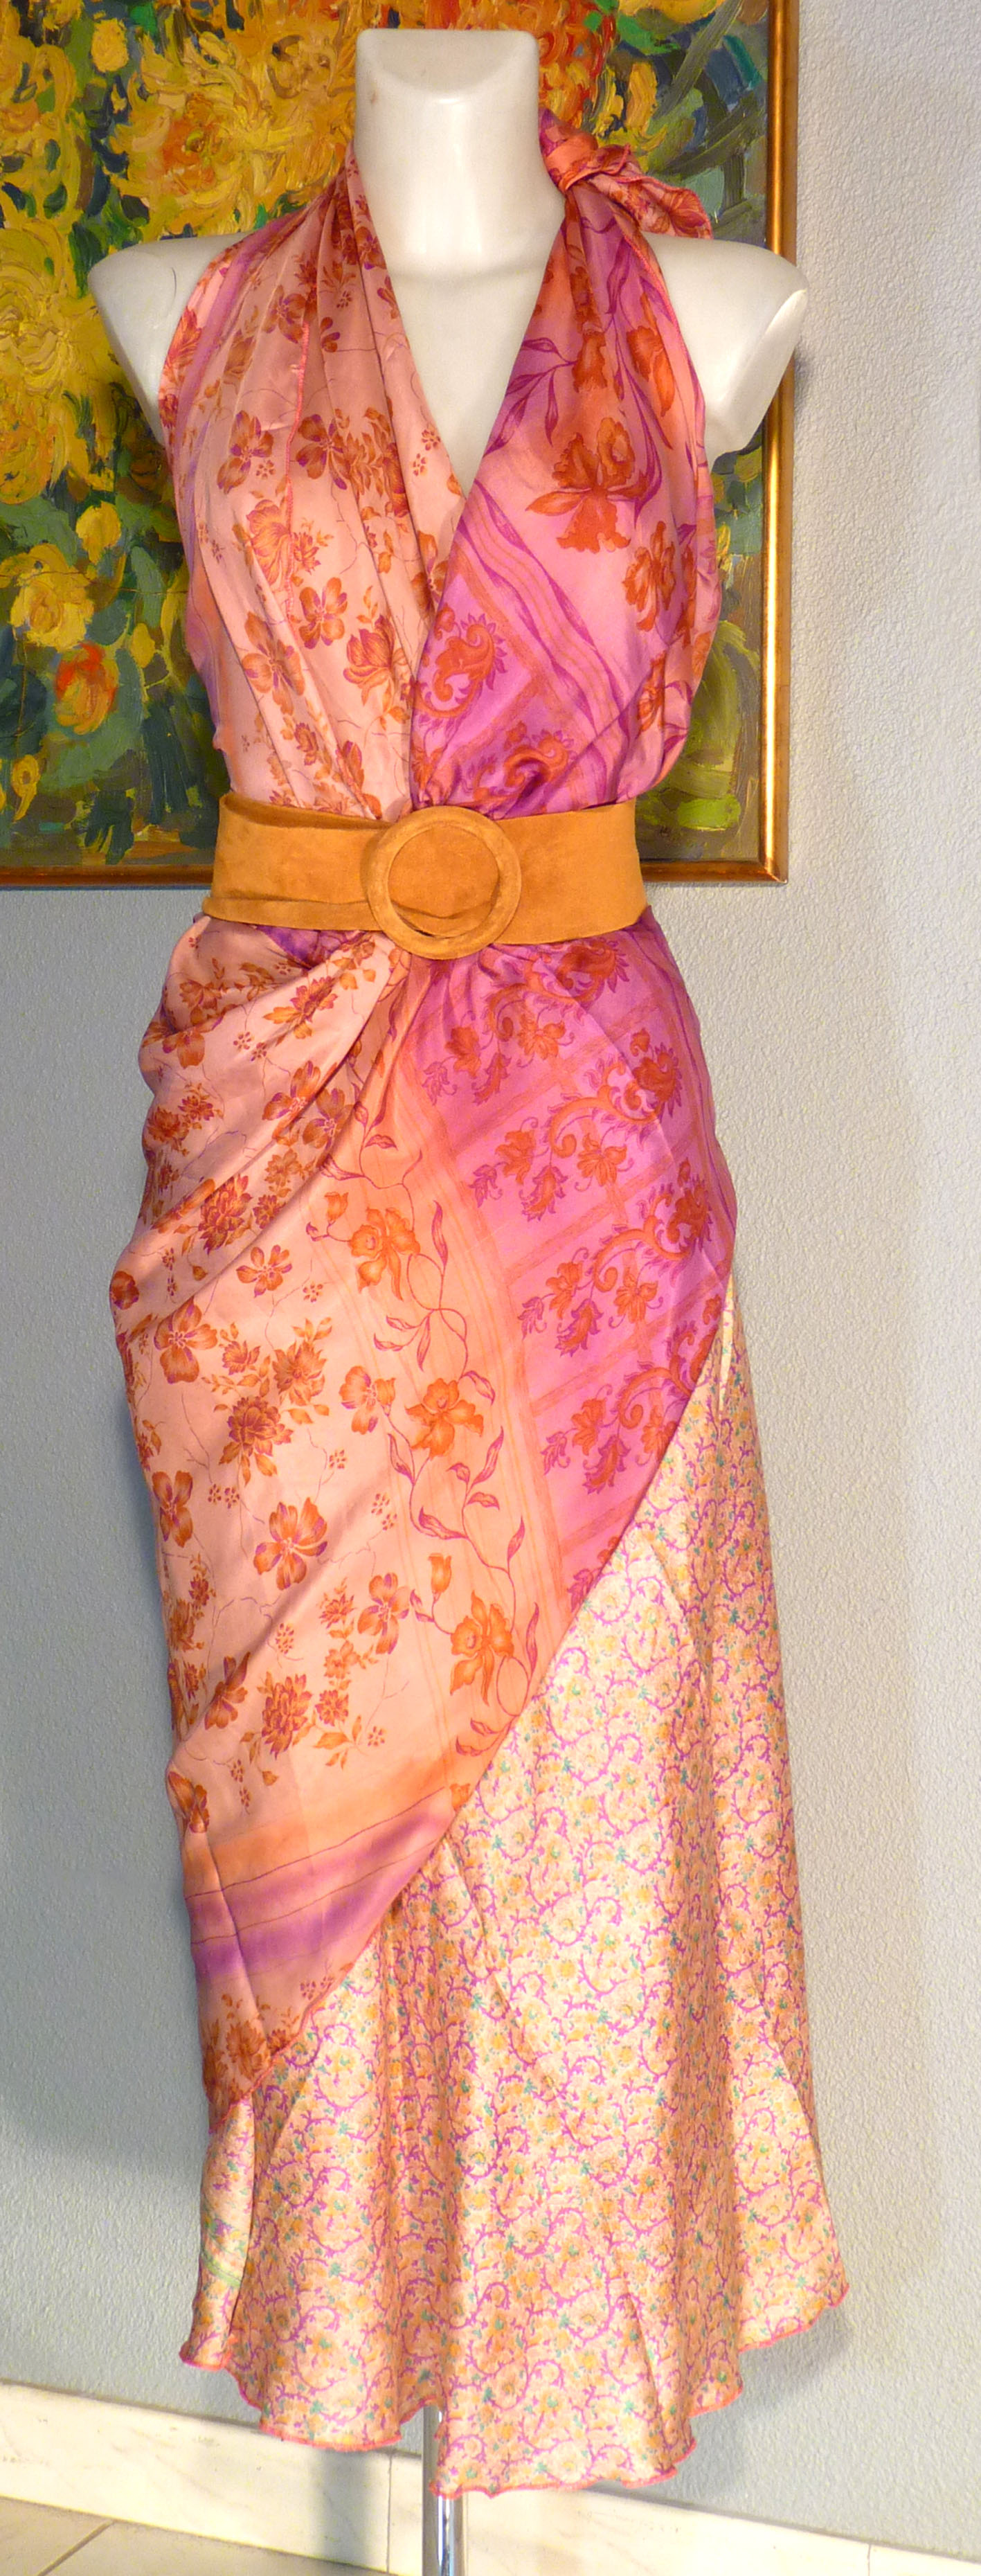 jupe indienne, jupe longue en soie, jupe portefeuille et réversible